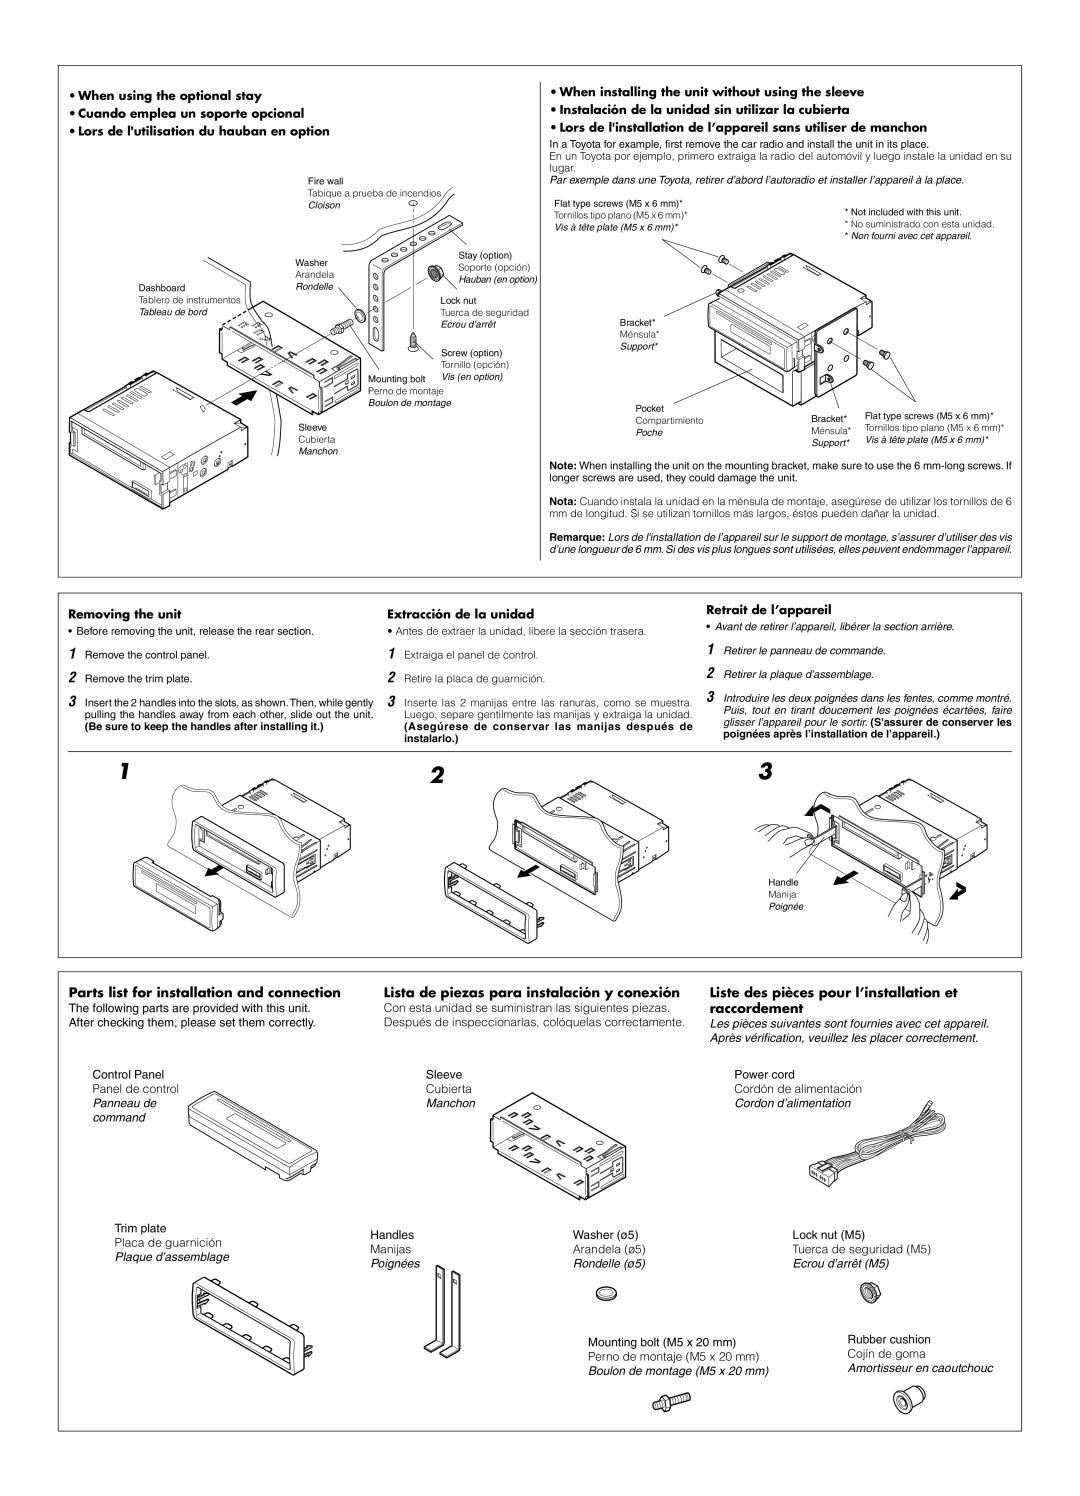 JVC KD-S50 manual Parts list for installation and connection, Lista de piezas para instalación y conexión, raccordement 